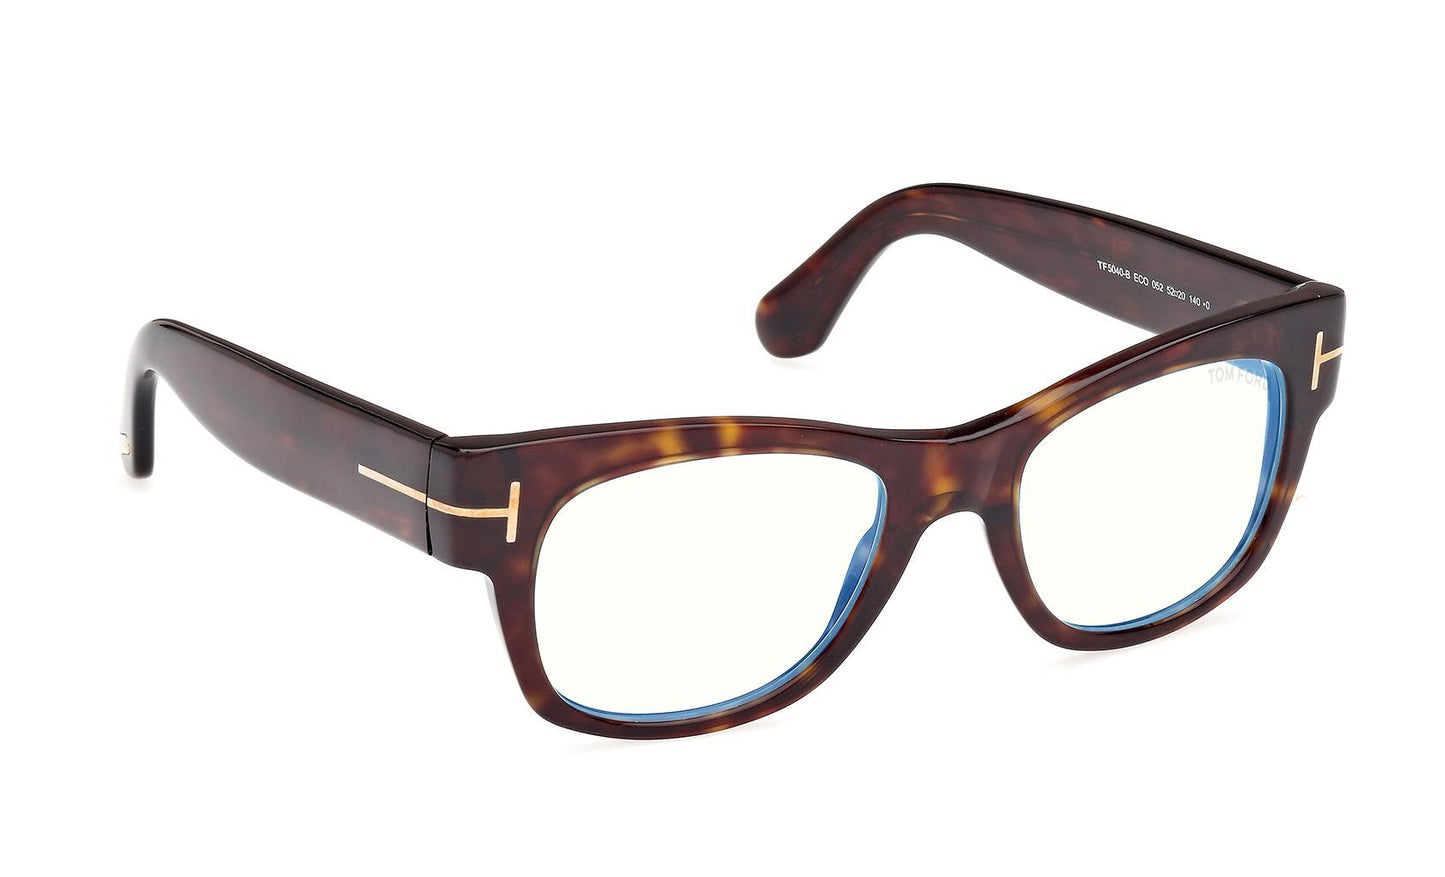 Tom Ford Eyeglasses FT5040/B 052